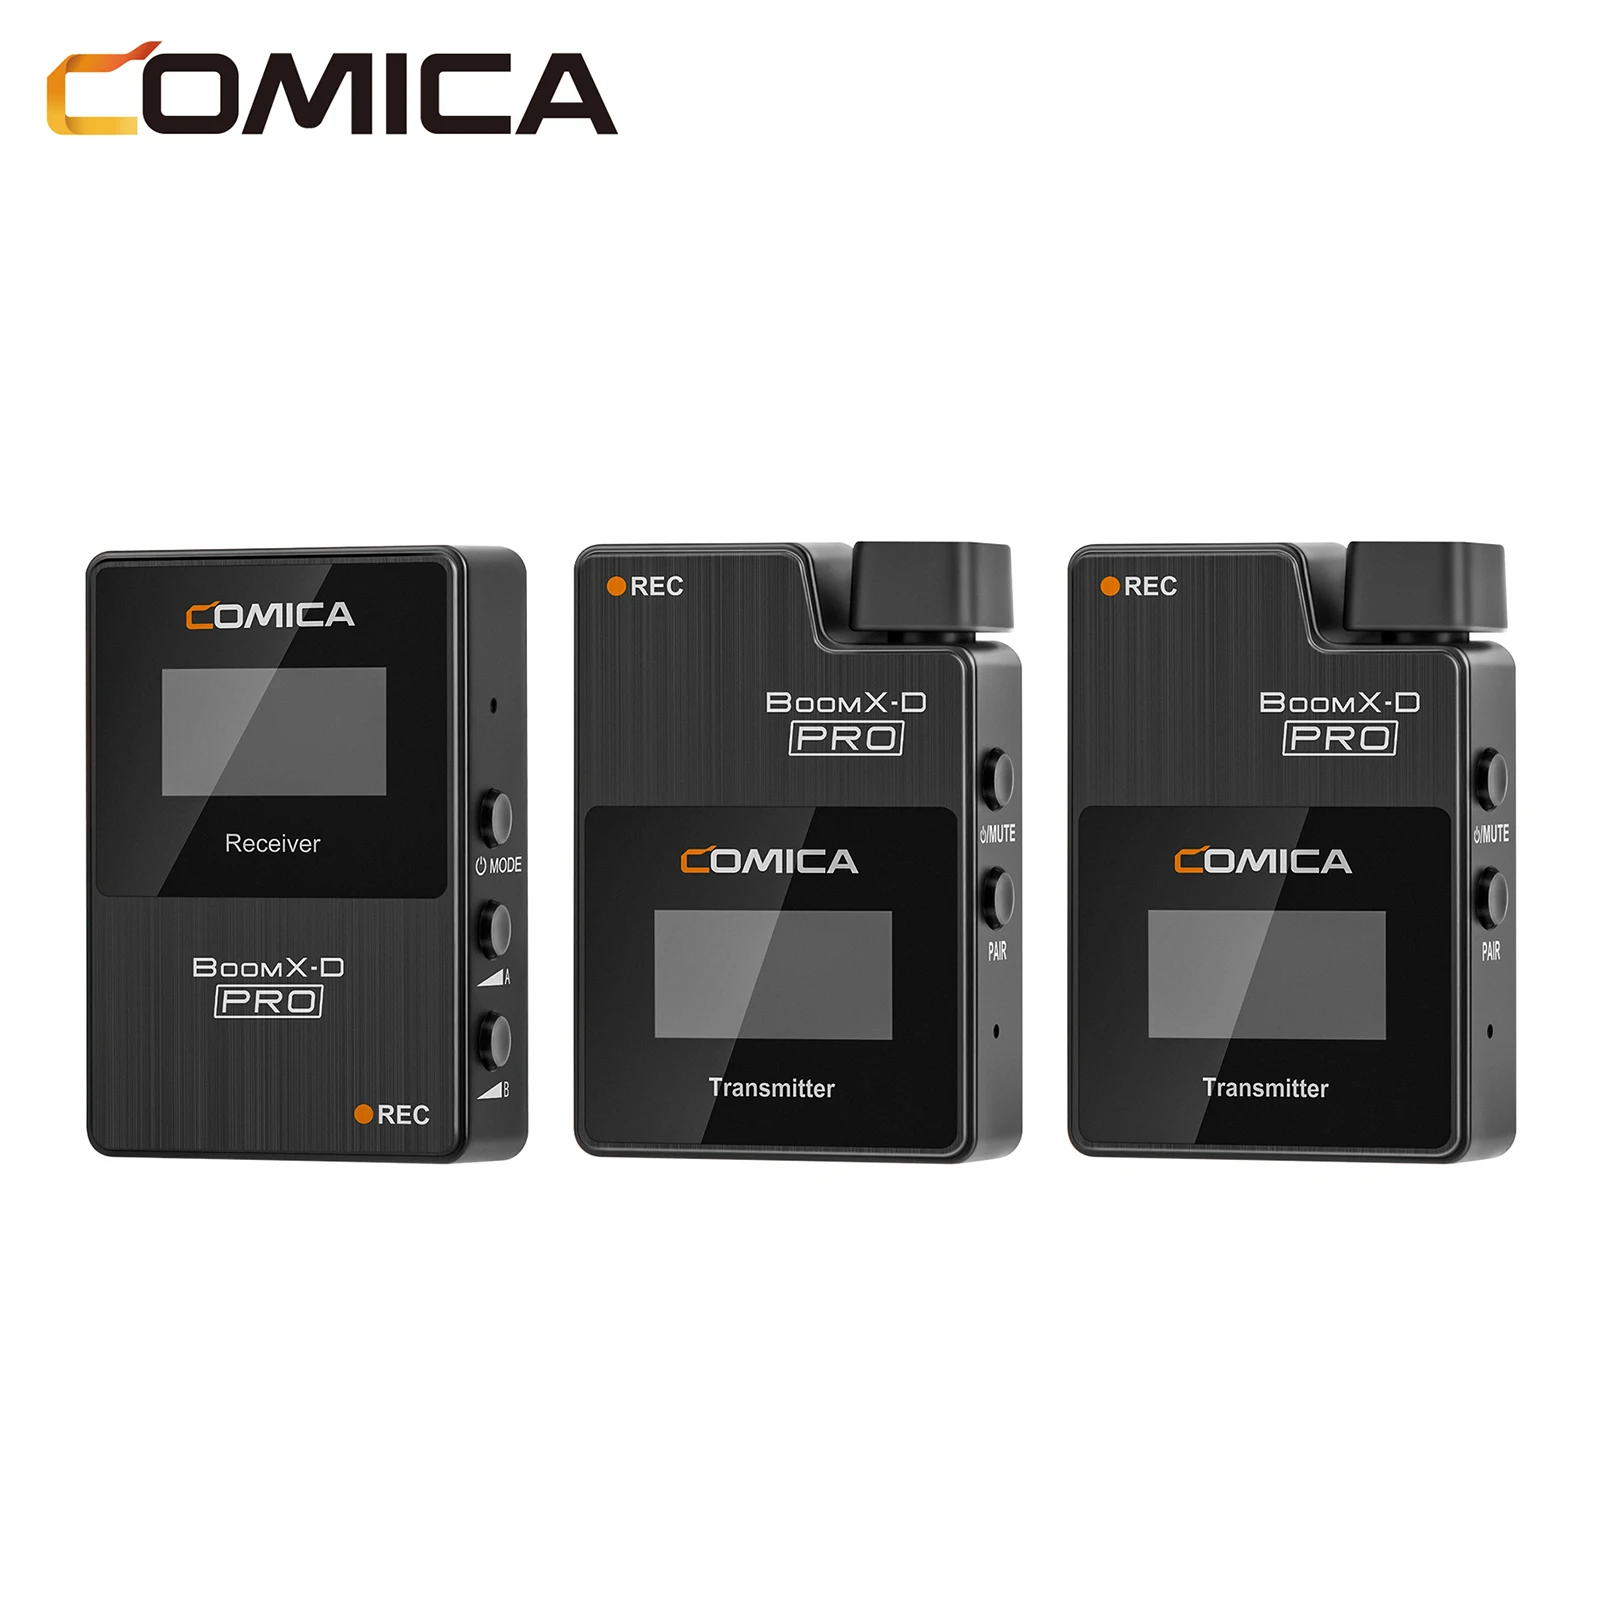 25%OFF】 Comica Boomx-d Pro  D22.4gデュアルチャンネルワイヤレスマイク100mデジタル一眼レフミラーレスカメラスマートフォンコンピューターの有効範囲 Buy Comica  Boomx-d Pro D2 Wireless Microphone,Comica Boomx-d Pro D2